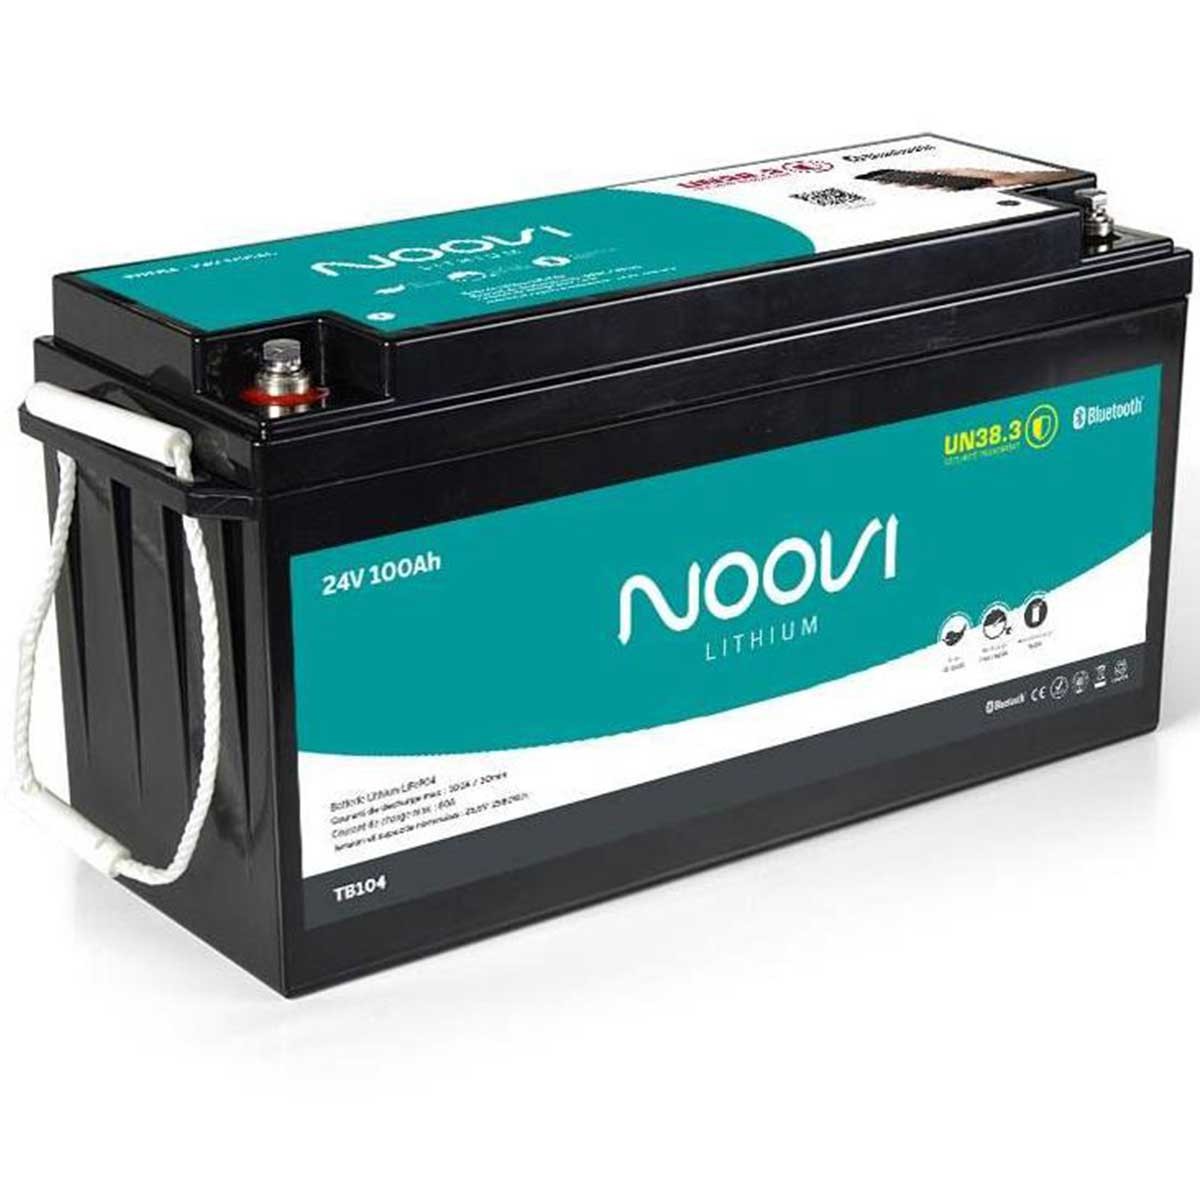 Noovi Batterie de service Lithium 100 A.h TB101 - Comptoir Nautique